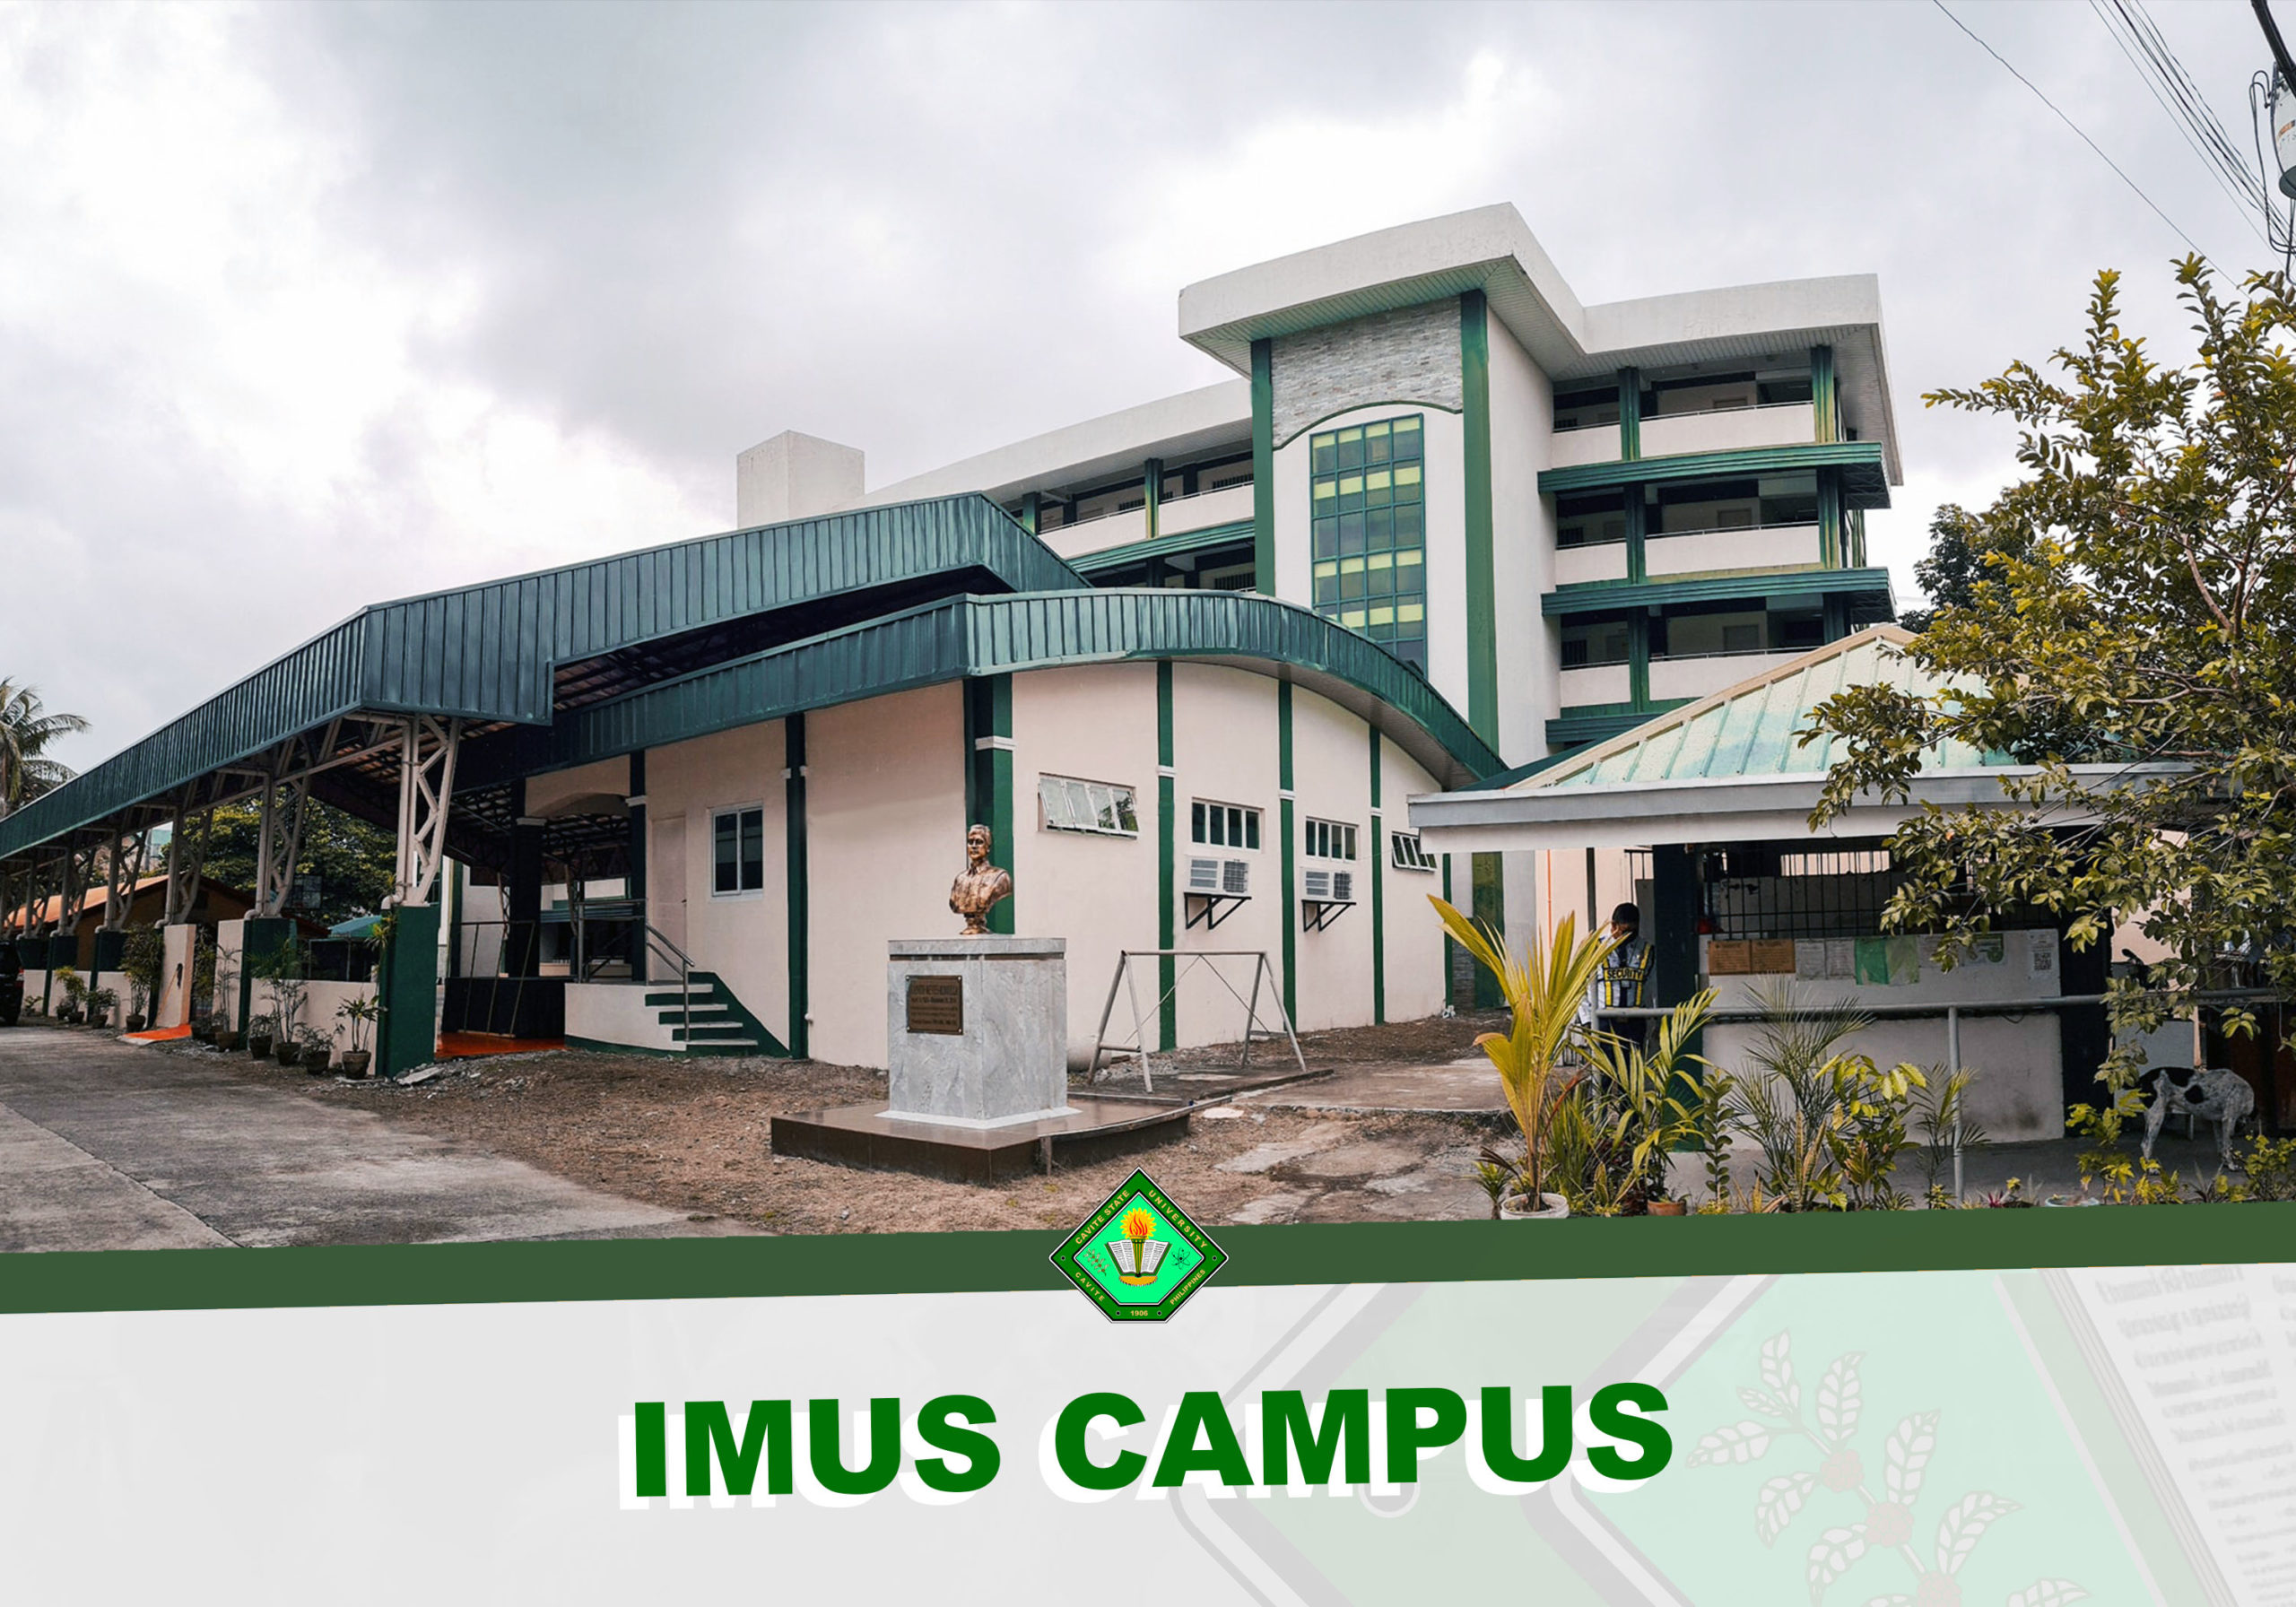 Imus Campus